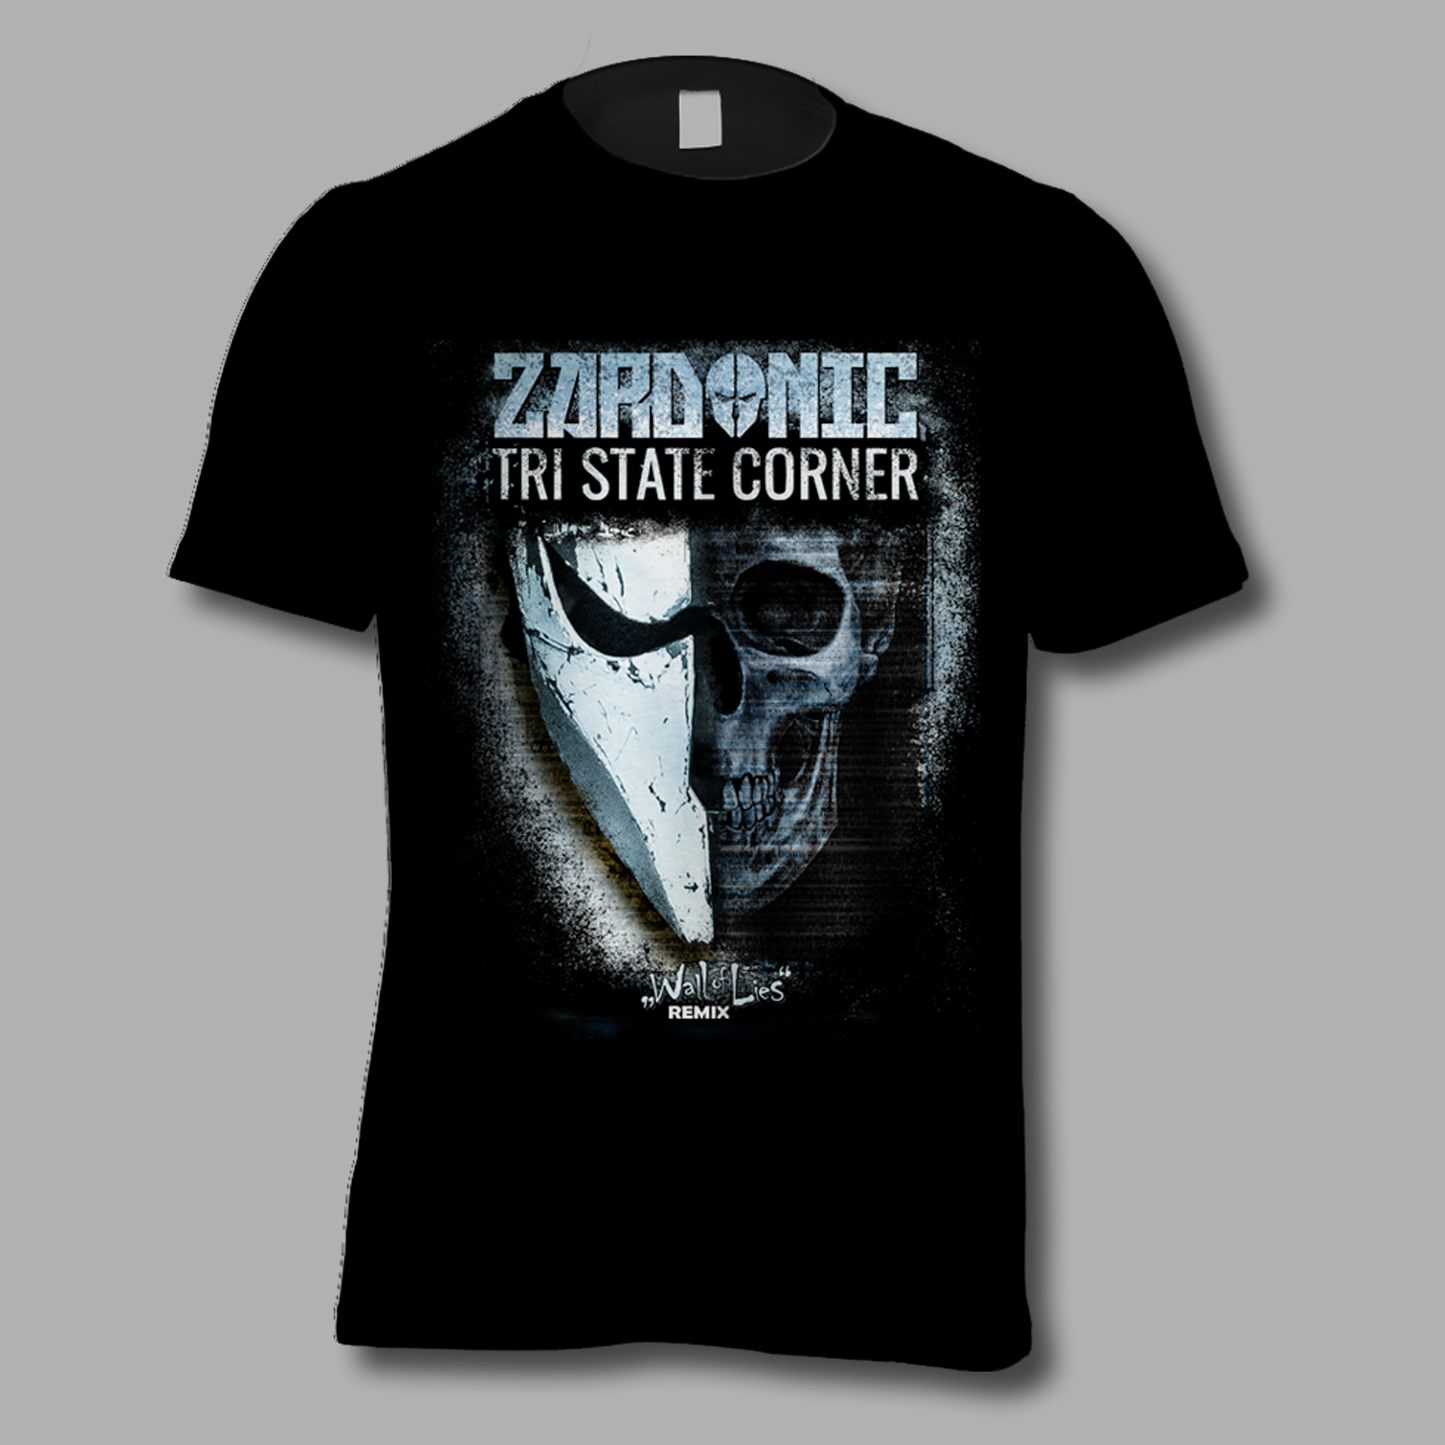 T-Shirt "Wall Of Lies - Zardonic Remix"